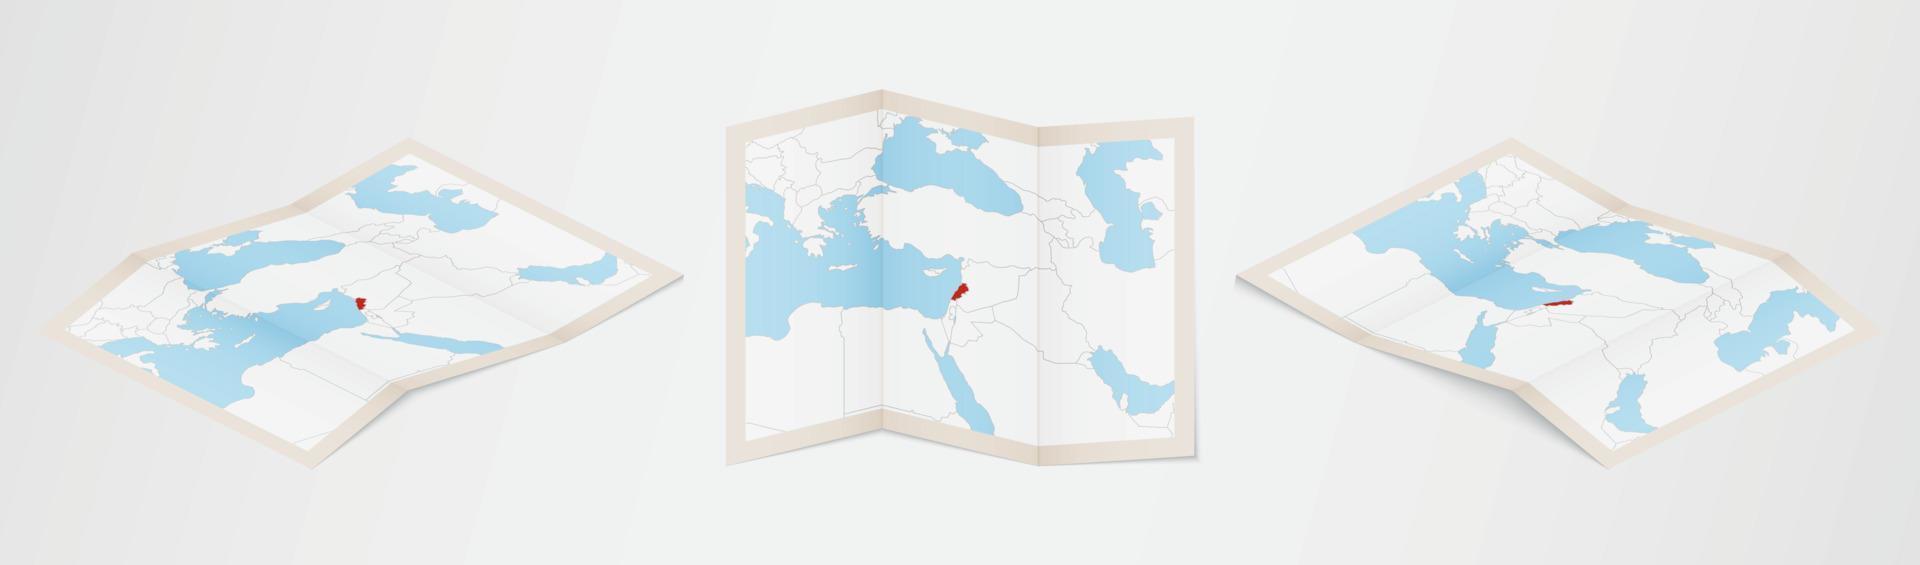 mapa plegado de líbano en tres versiones diferentes. vector